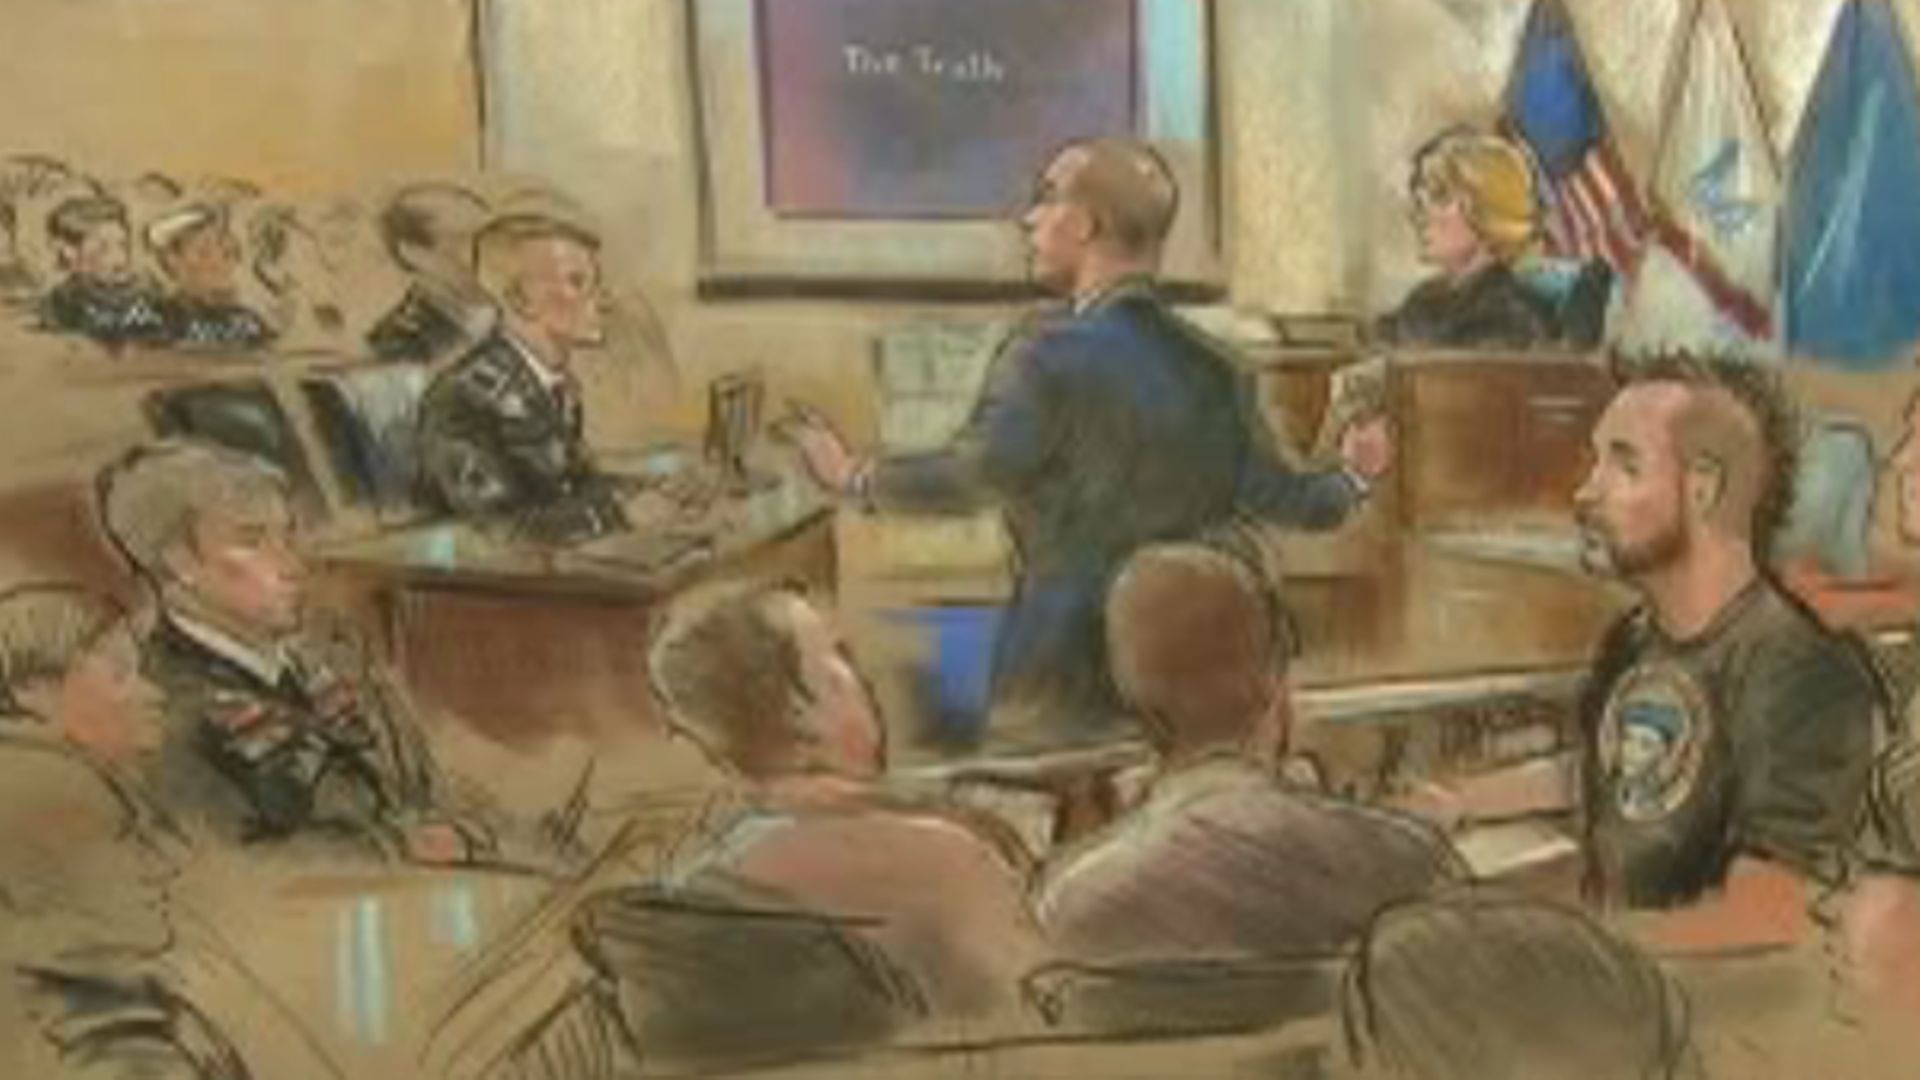 Bradley Manning coupable d'espionnage mais innocenté du chef de collusion avec l'ennemi